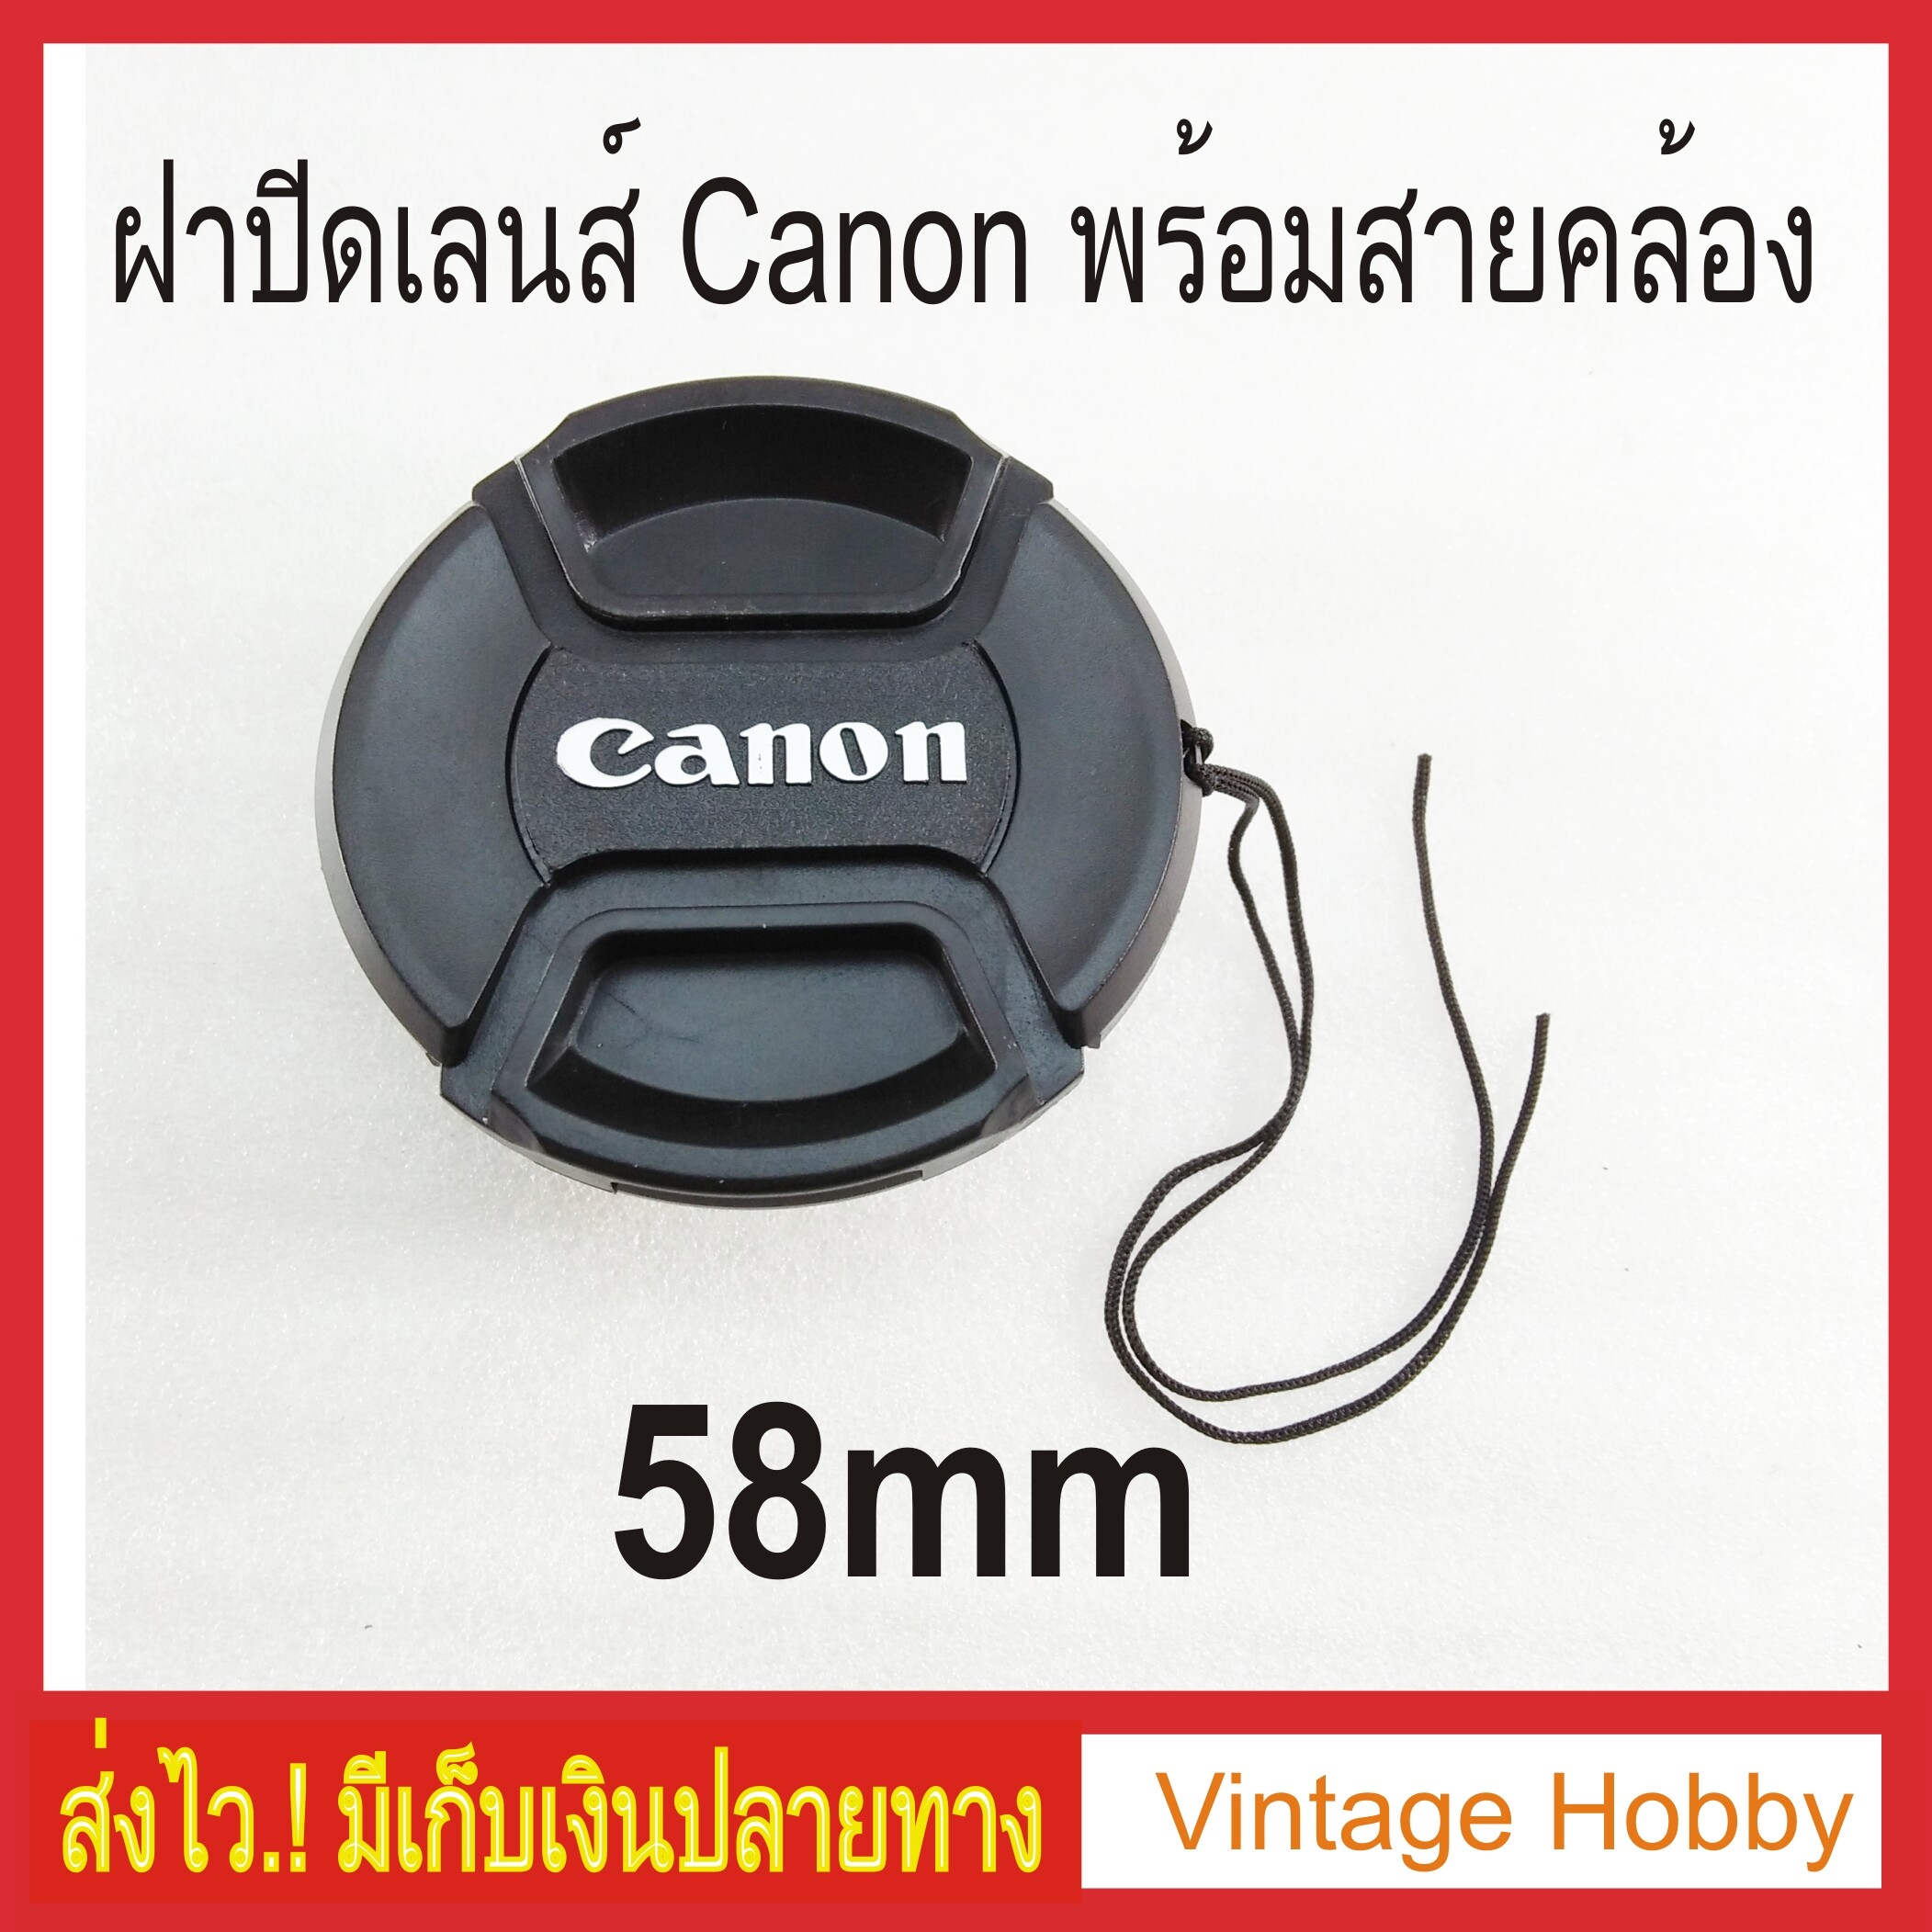 ฝาปิดเลนส์ [Lens Cap] พร้อมสายคล้อง โลโก้ Canon 58mm